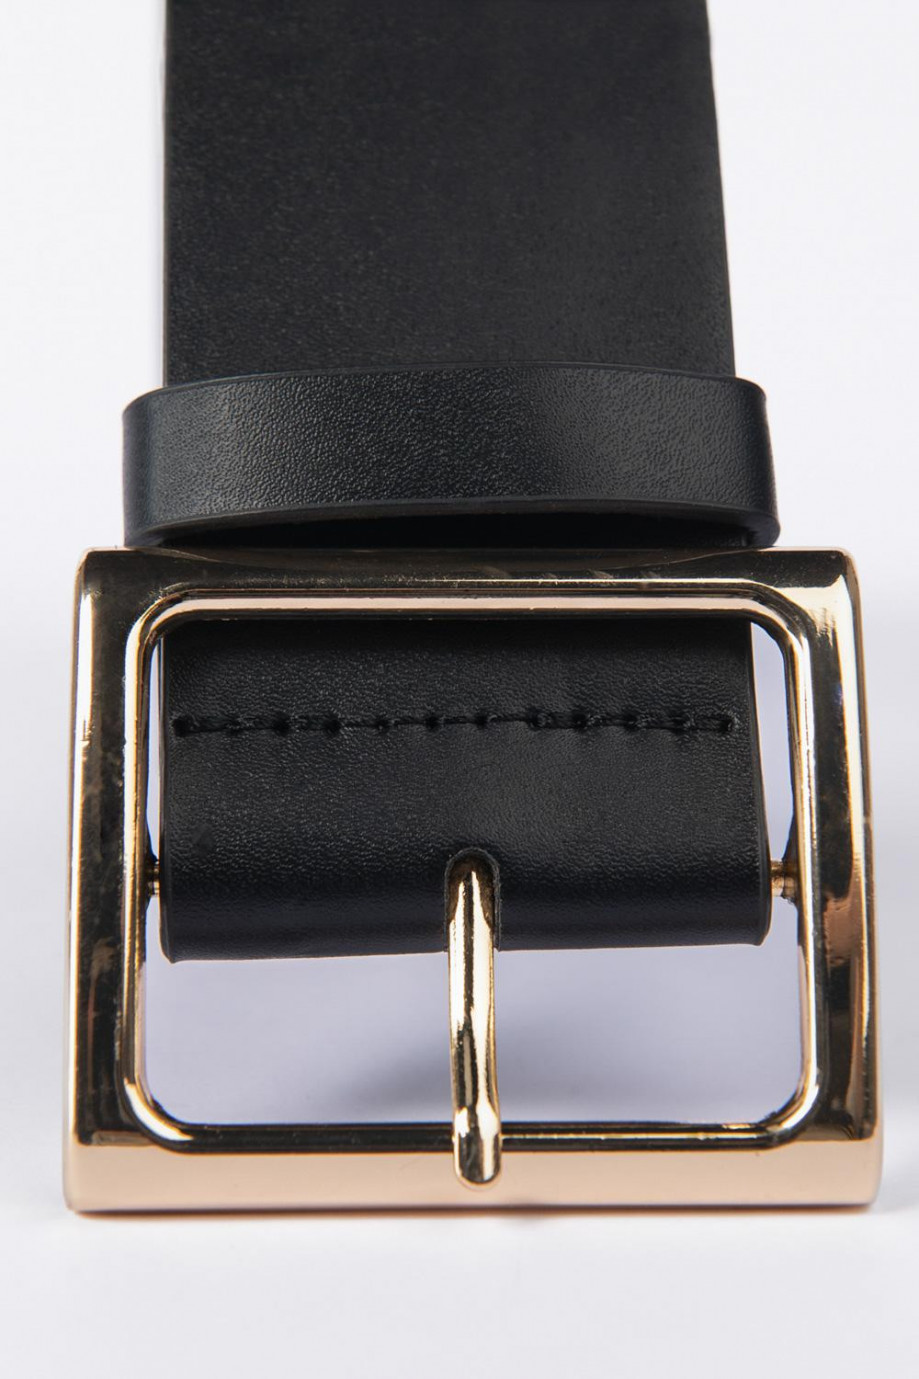 Cinturón negro con hebilla cuadrada y ojaletes metálicos